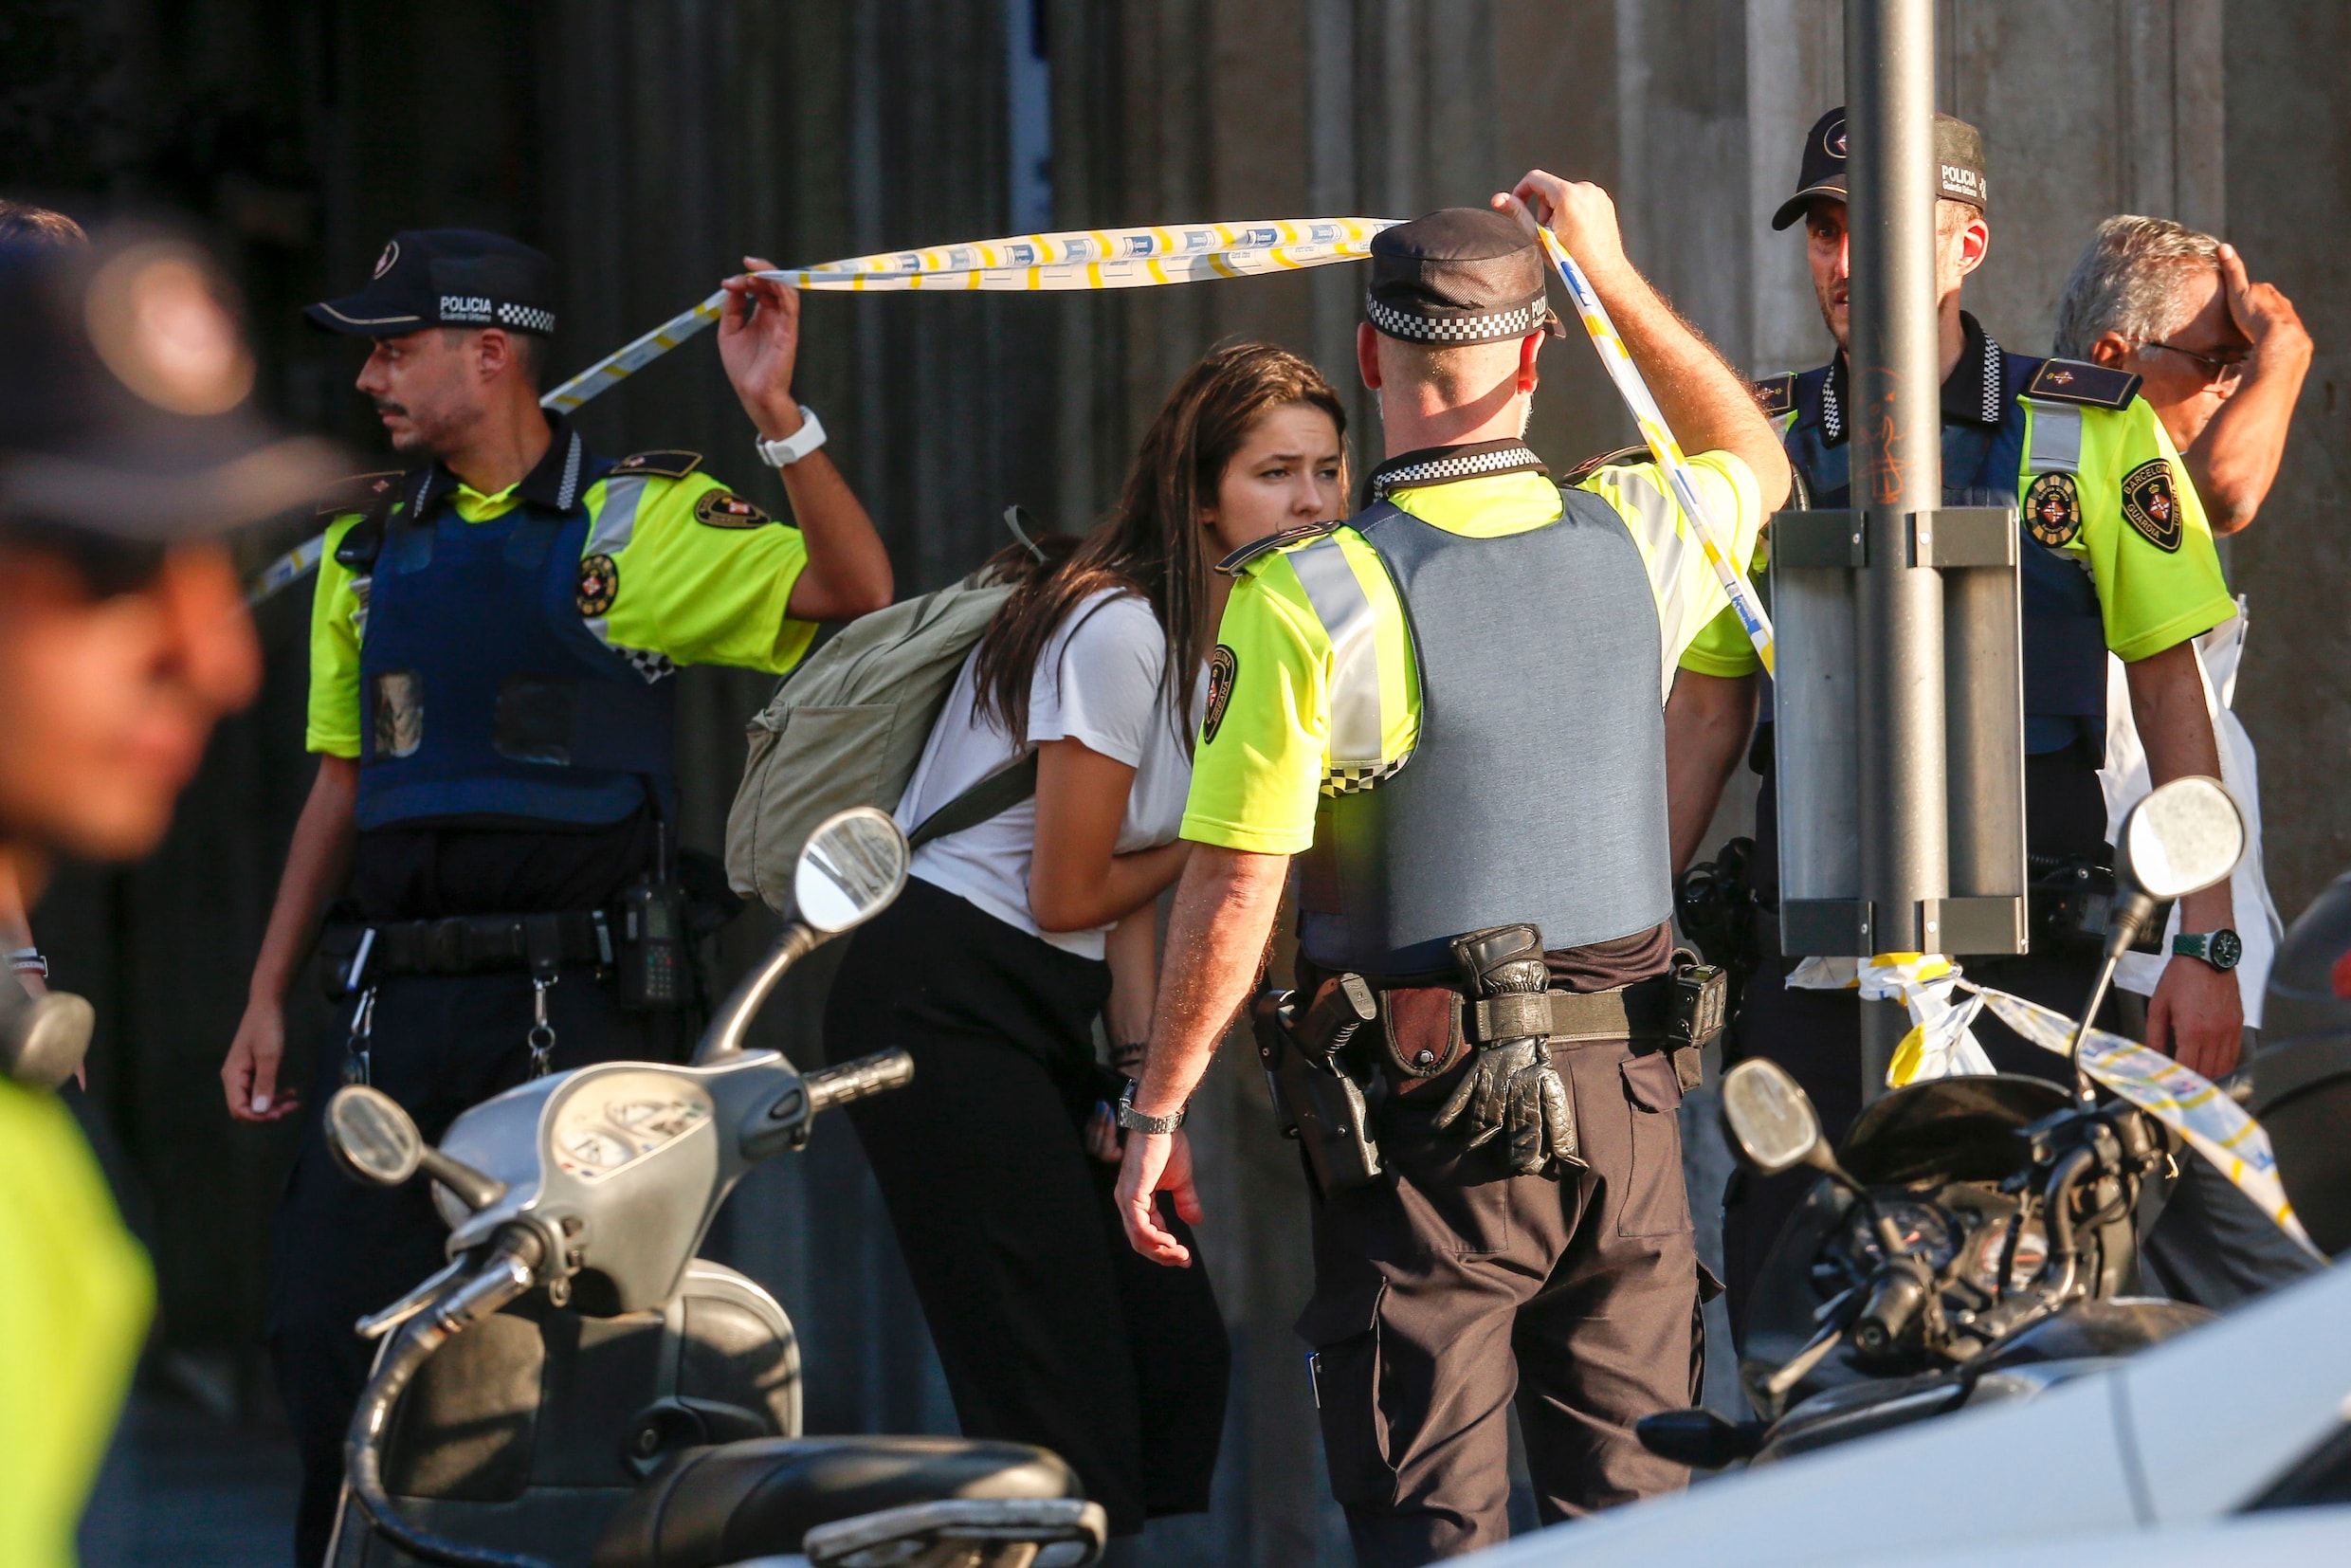 Vlaamse vrouw komt om bij aanslag Barcelona, andere Belgen in het ziekenhuis